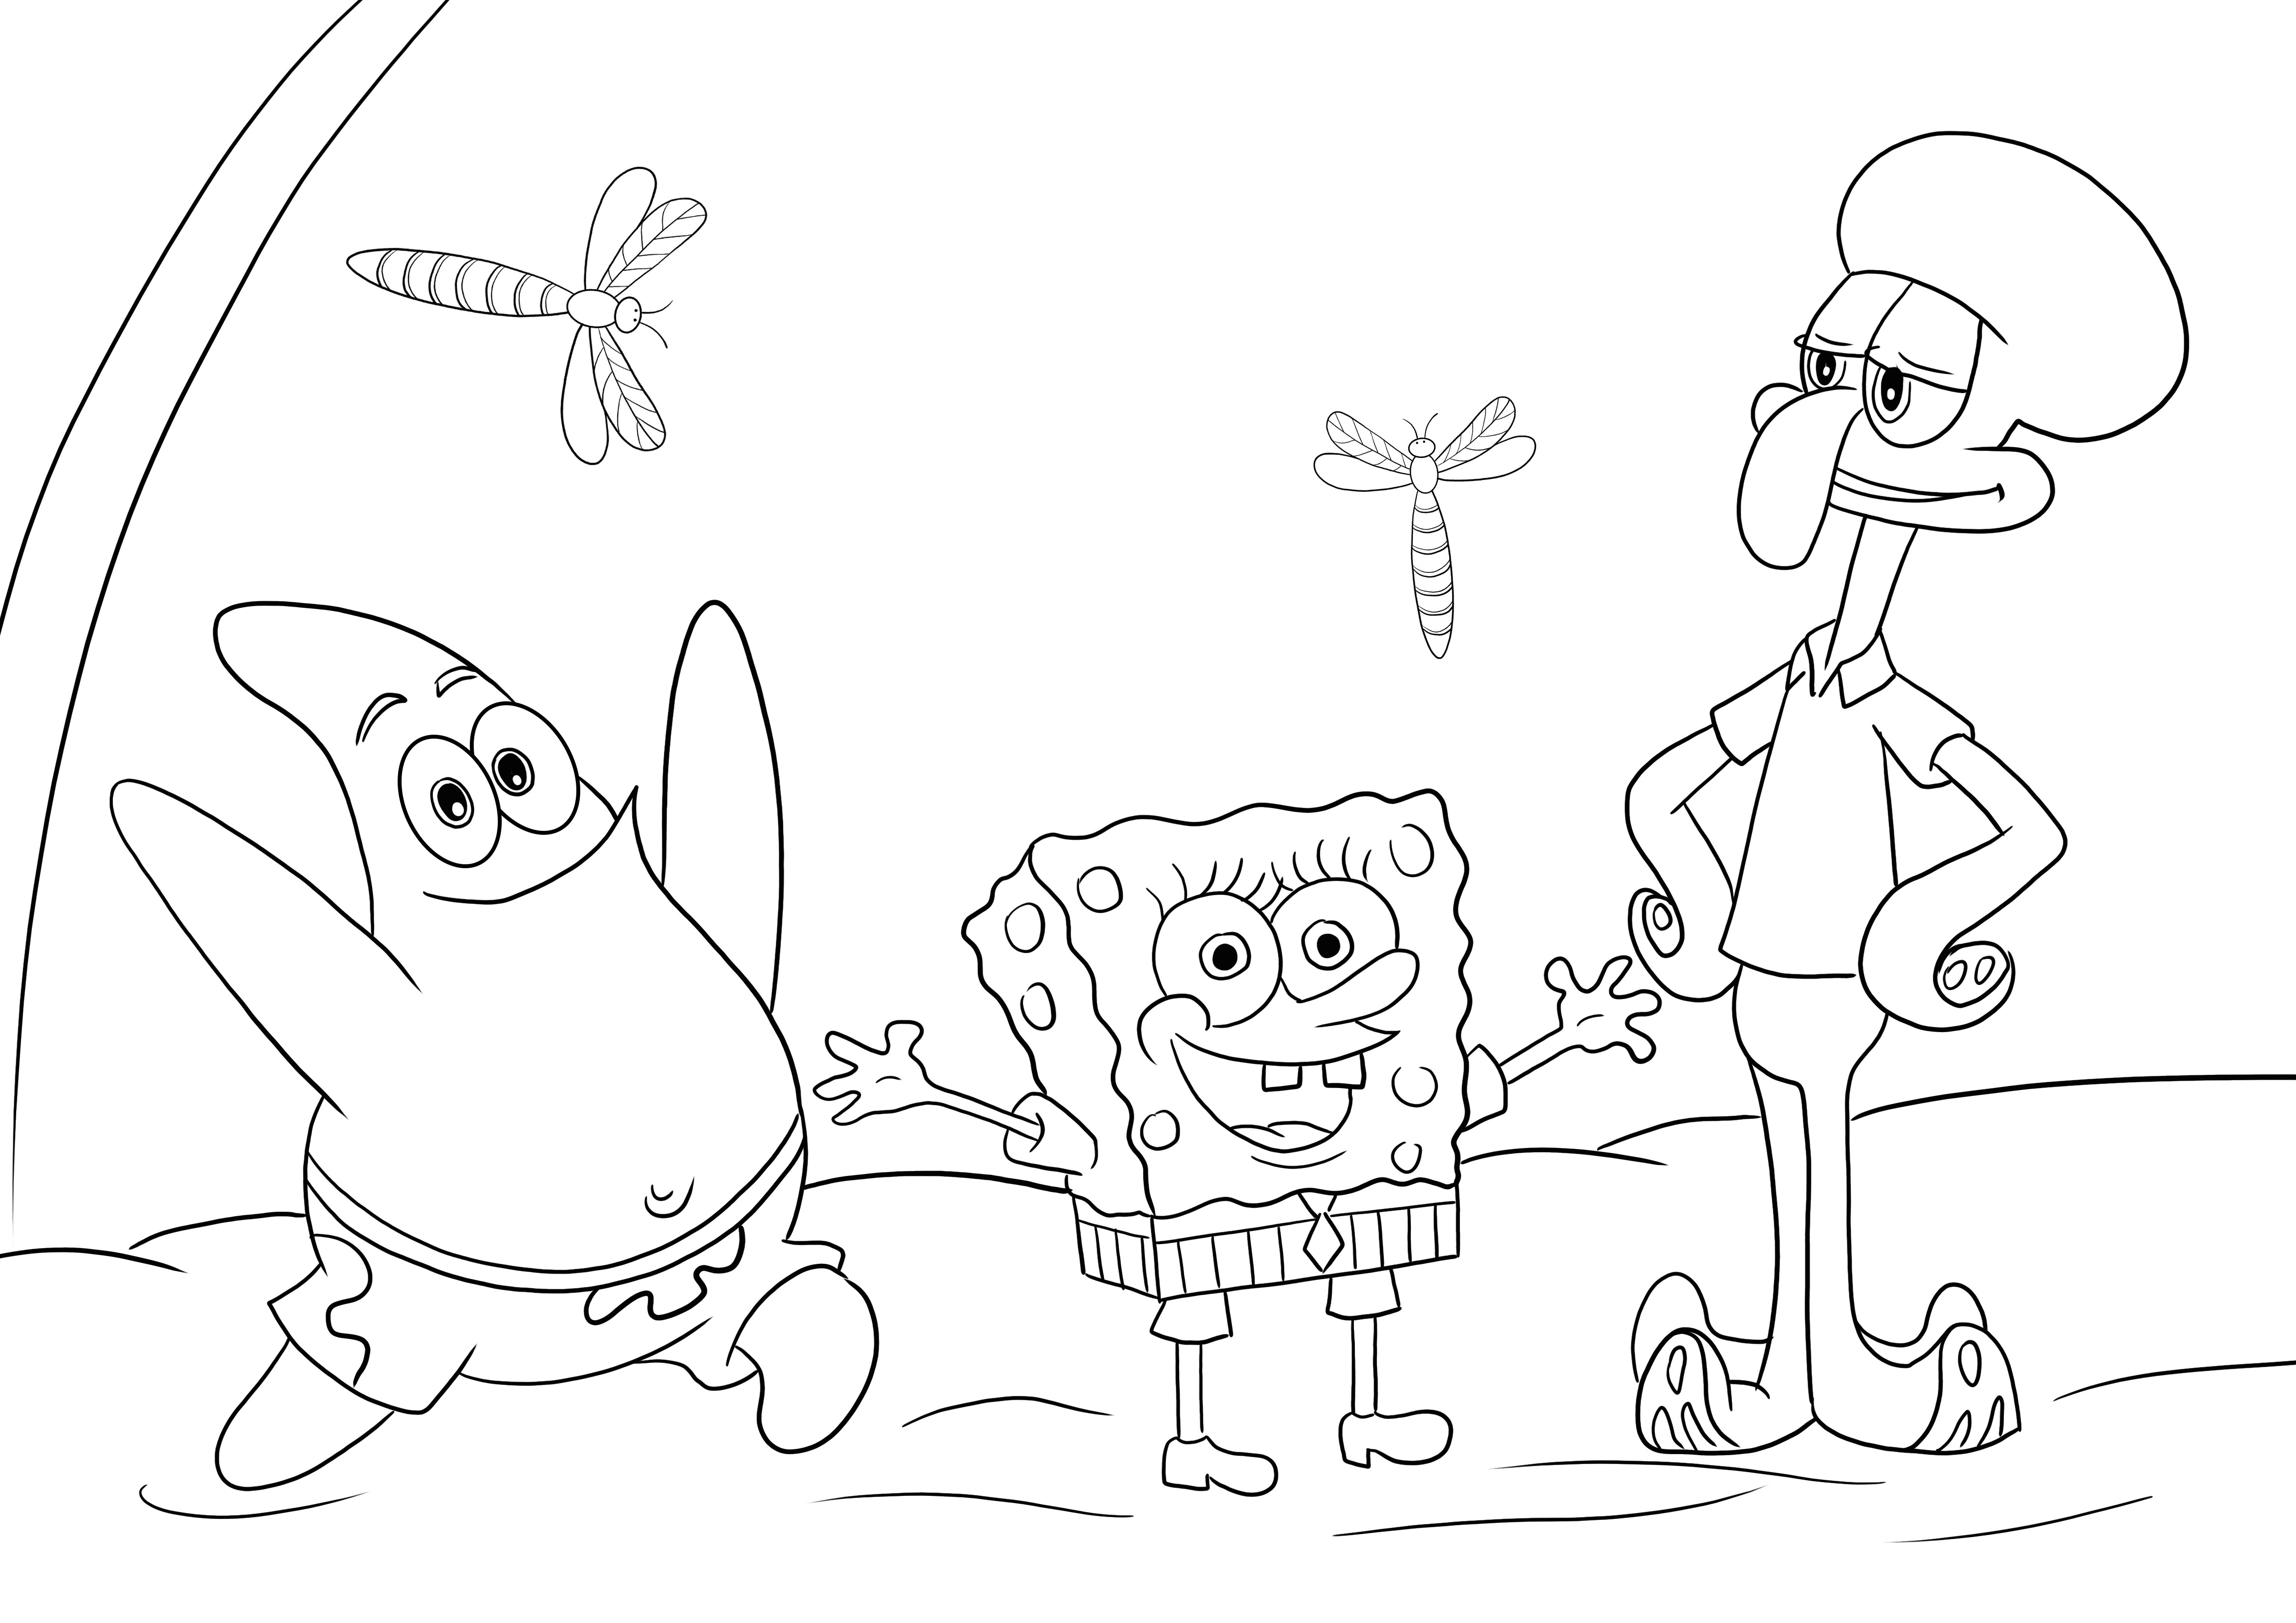 Sponge Bob-Patrick Star-Squidward untuk mewarnai dan mencetak gambar gratis